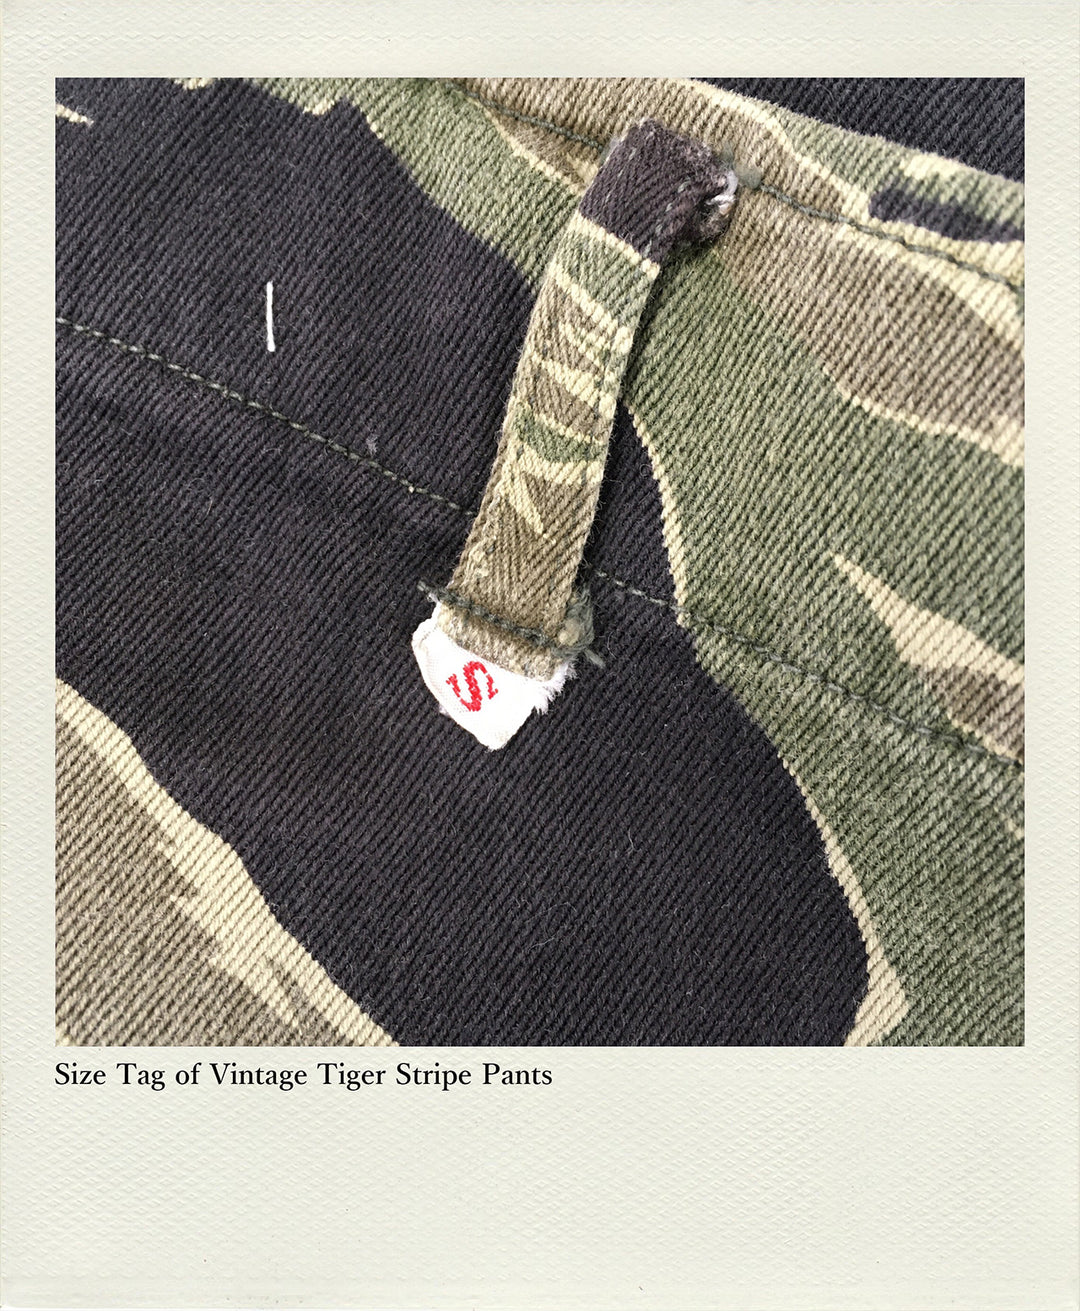 Size Tag of Vintage Tiger Stripe Pants